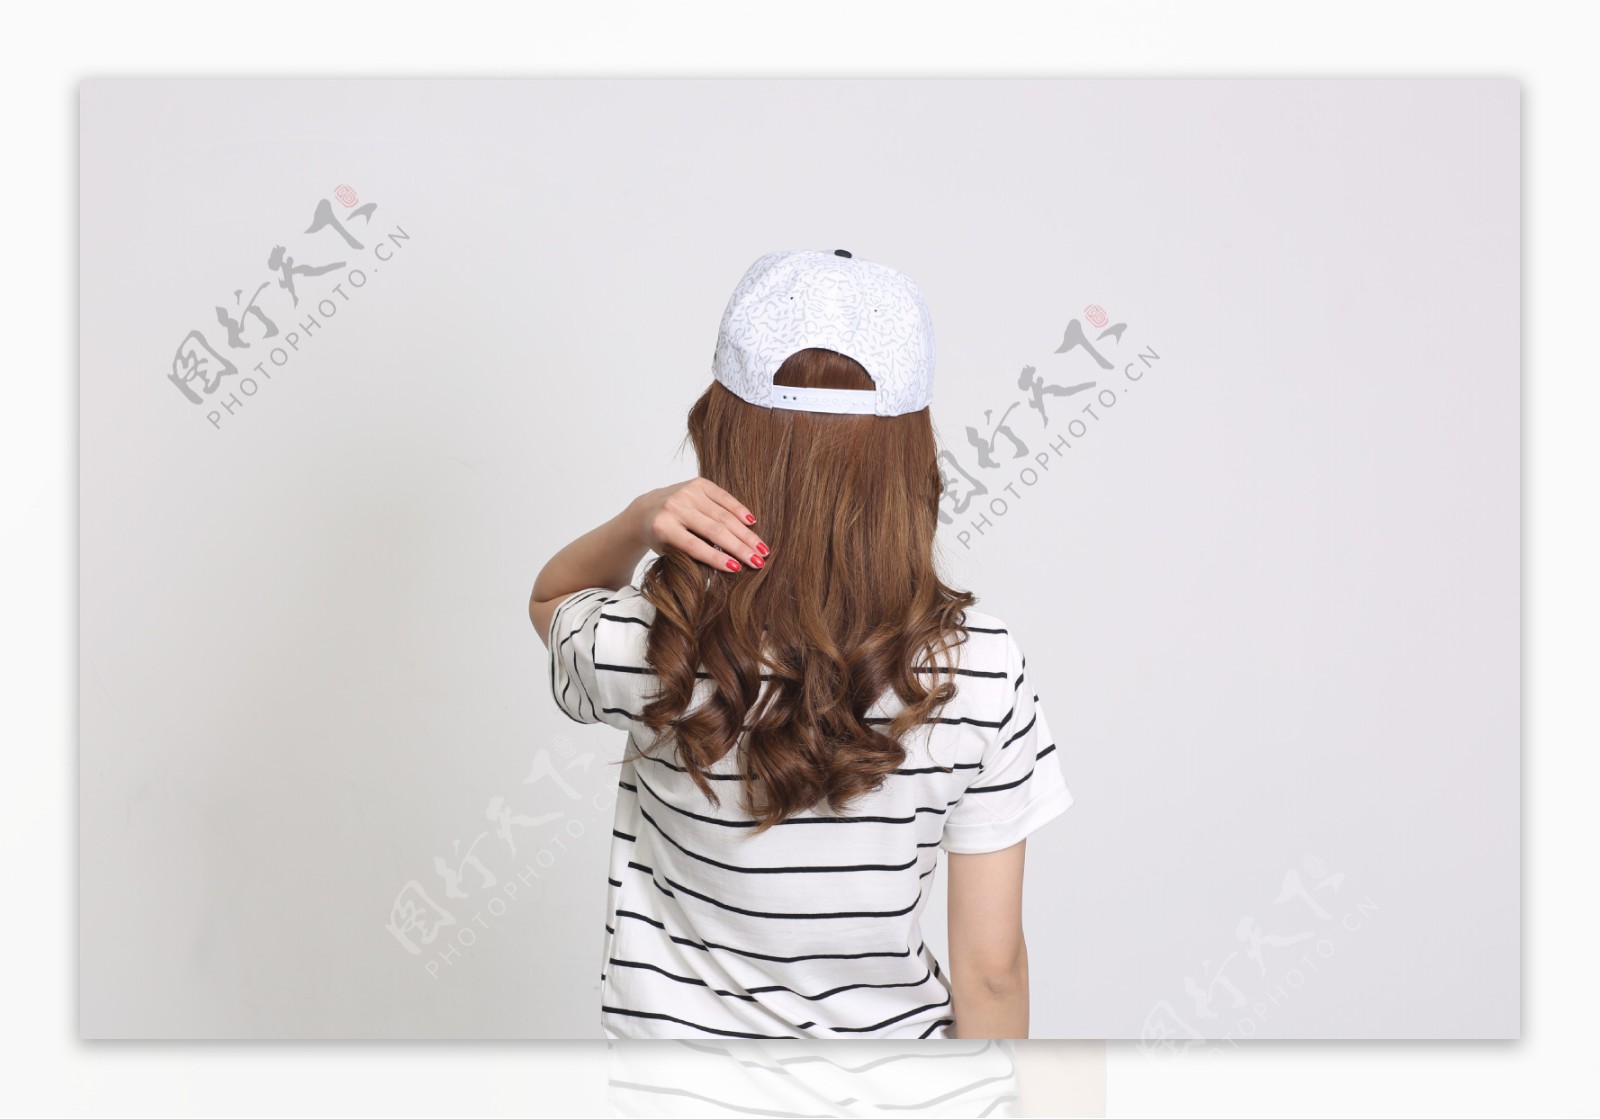 时尚韩版夏天女士棒球帽6